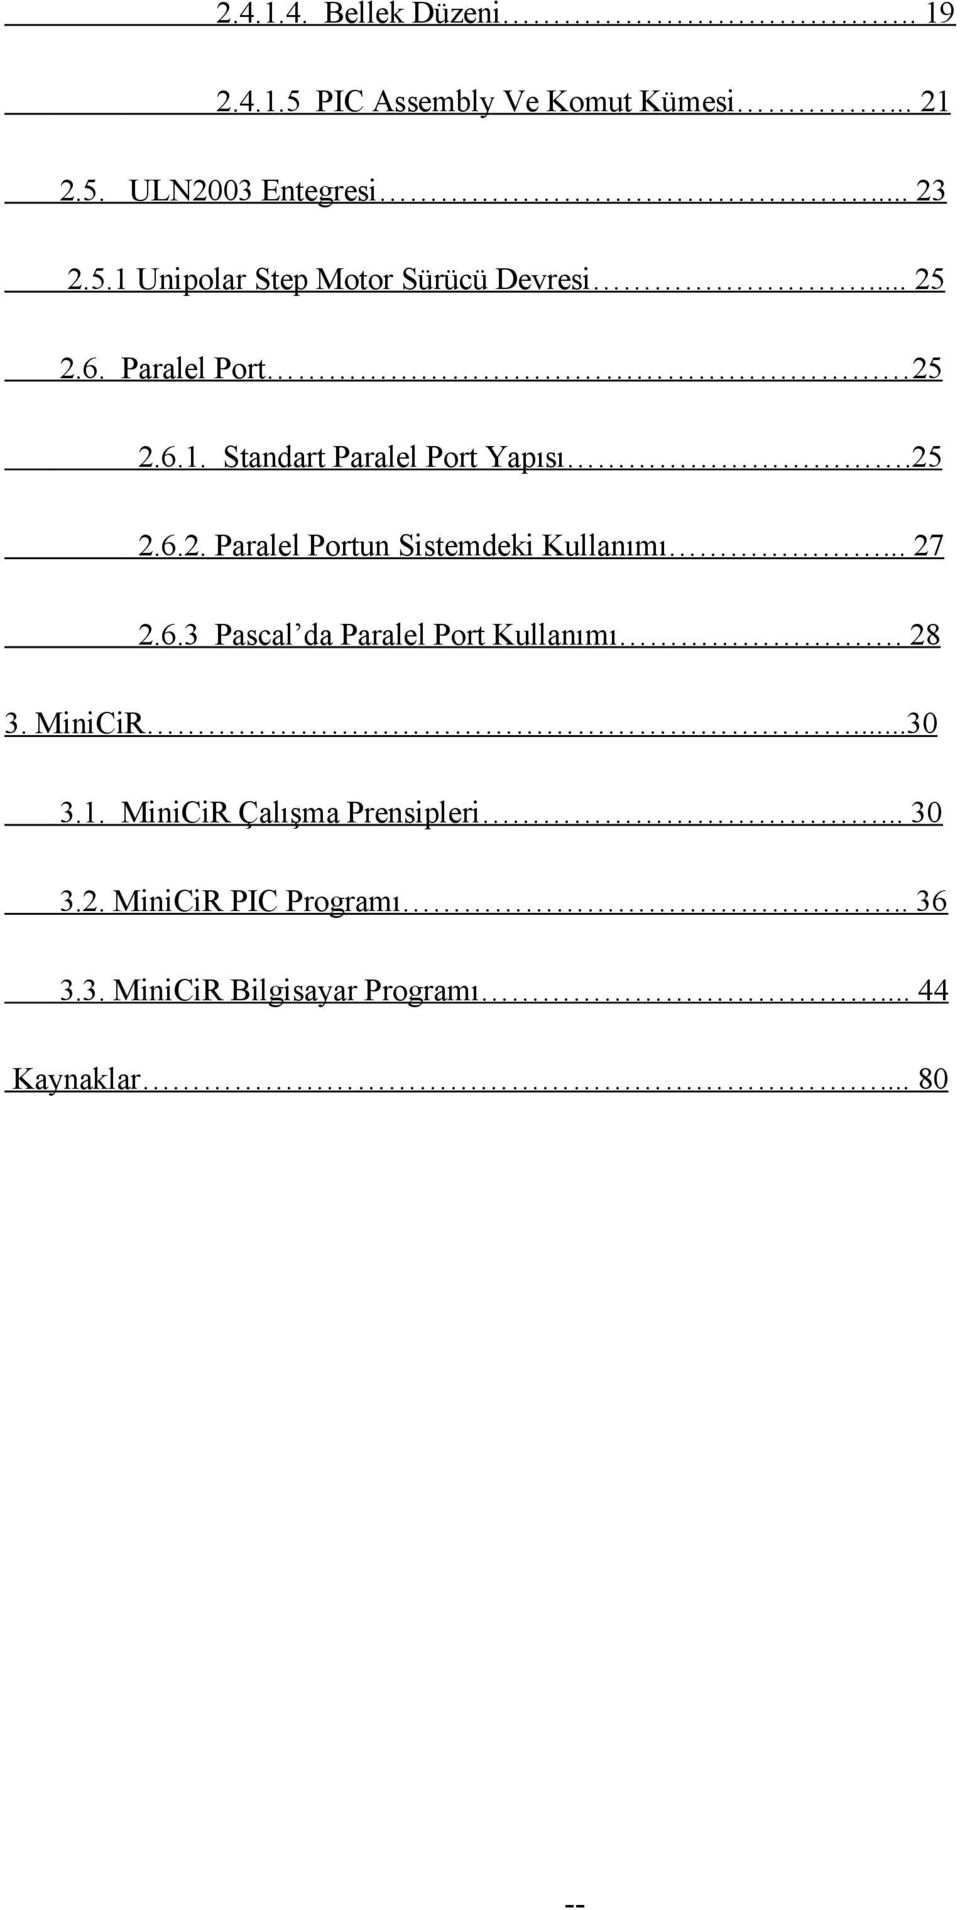 .. 27 2.6.3 Pascal da Paralel Port Kullanımı. 28 3. MiniCiR...30 3.1. MiniCiR Çalışma Prensipleri... 30 3.2. MiniCiR PIC Programı.